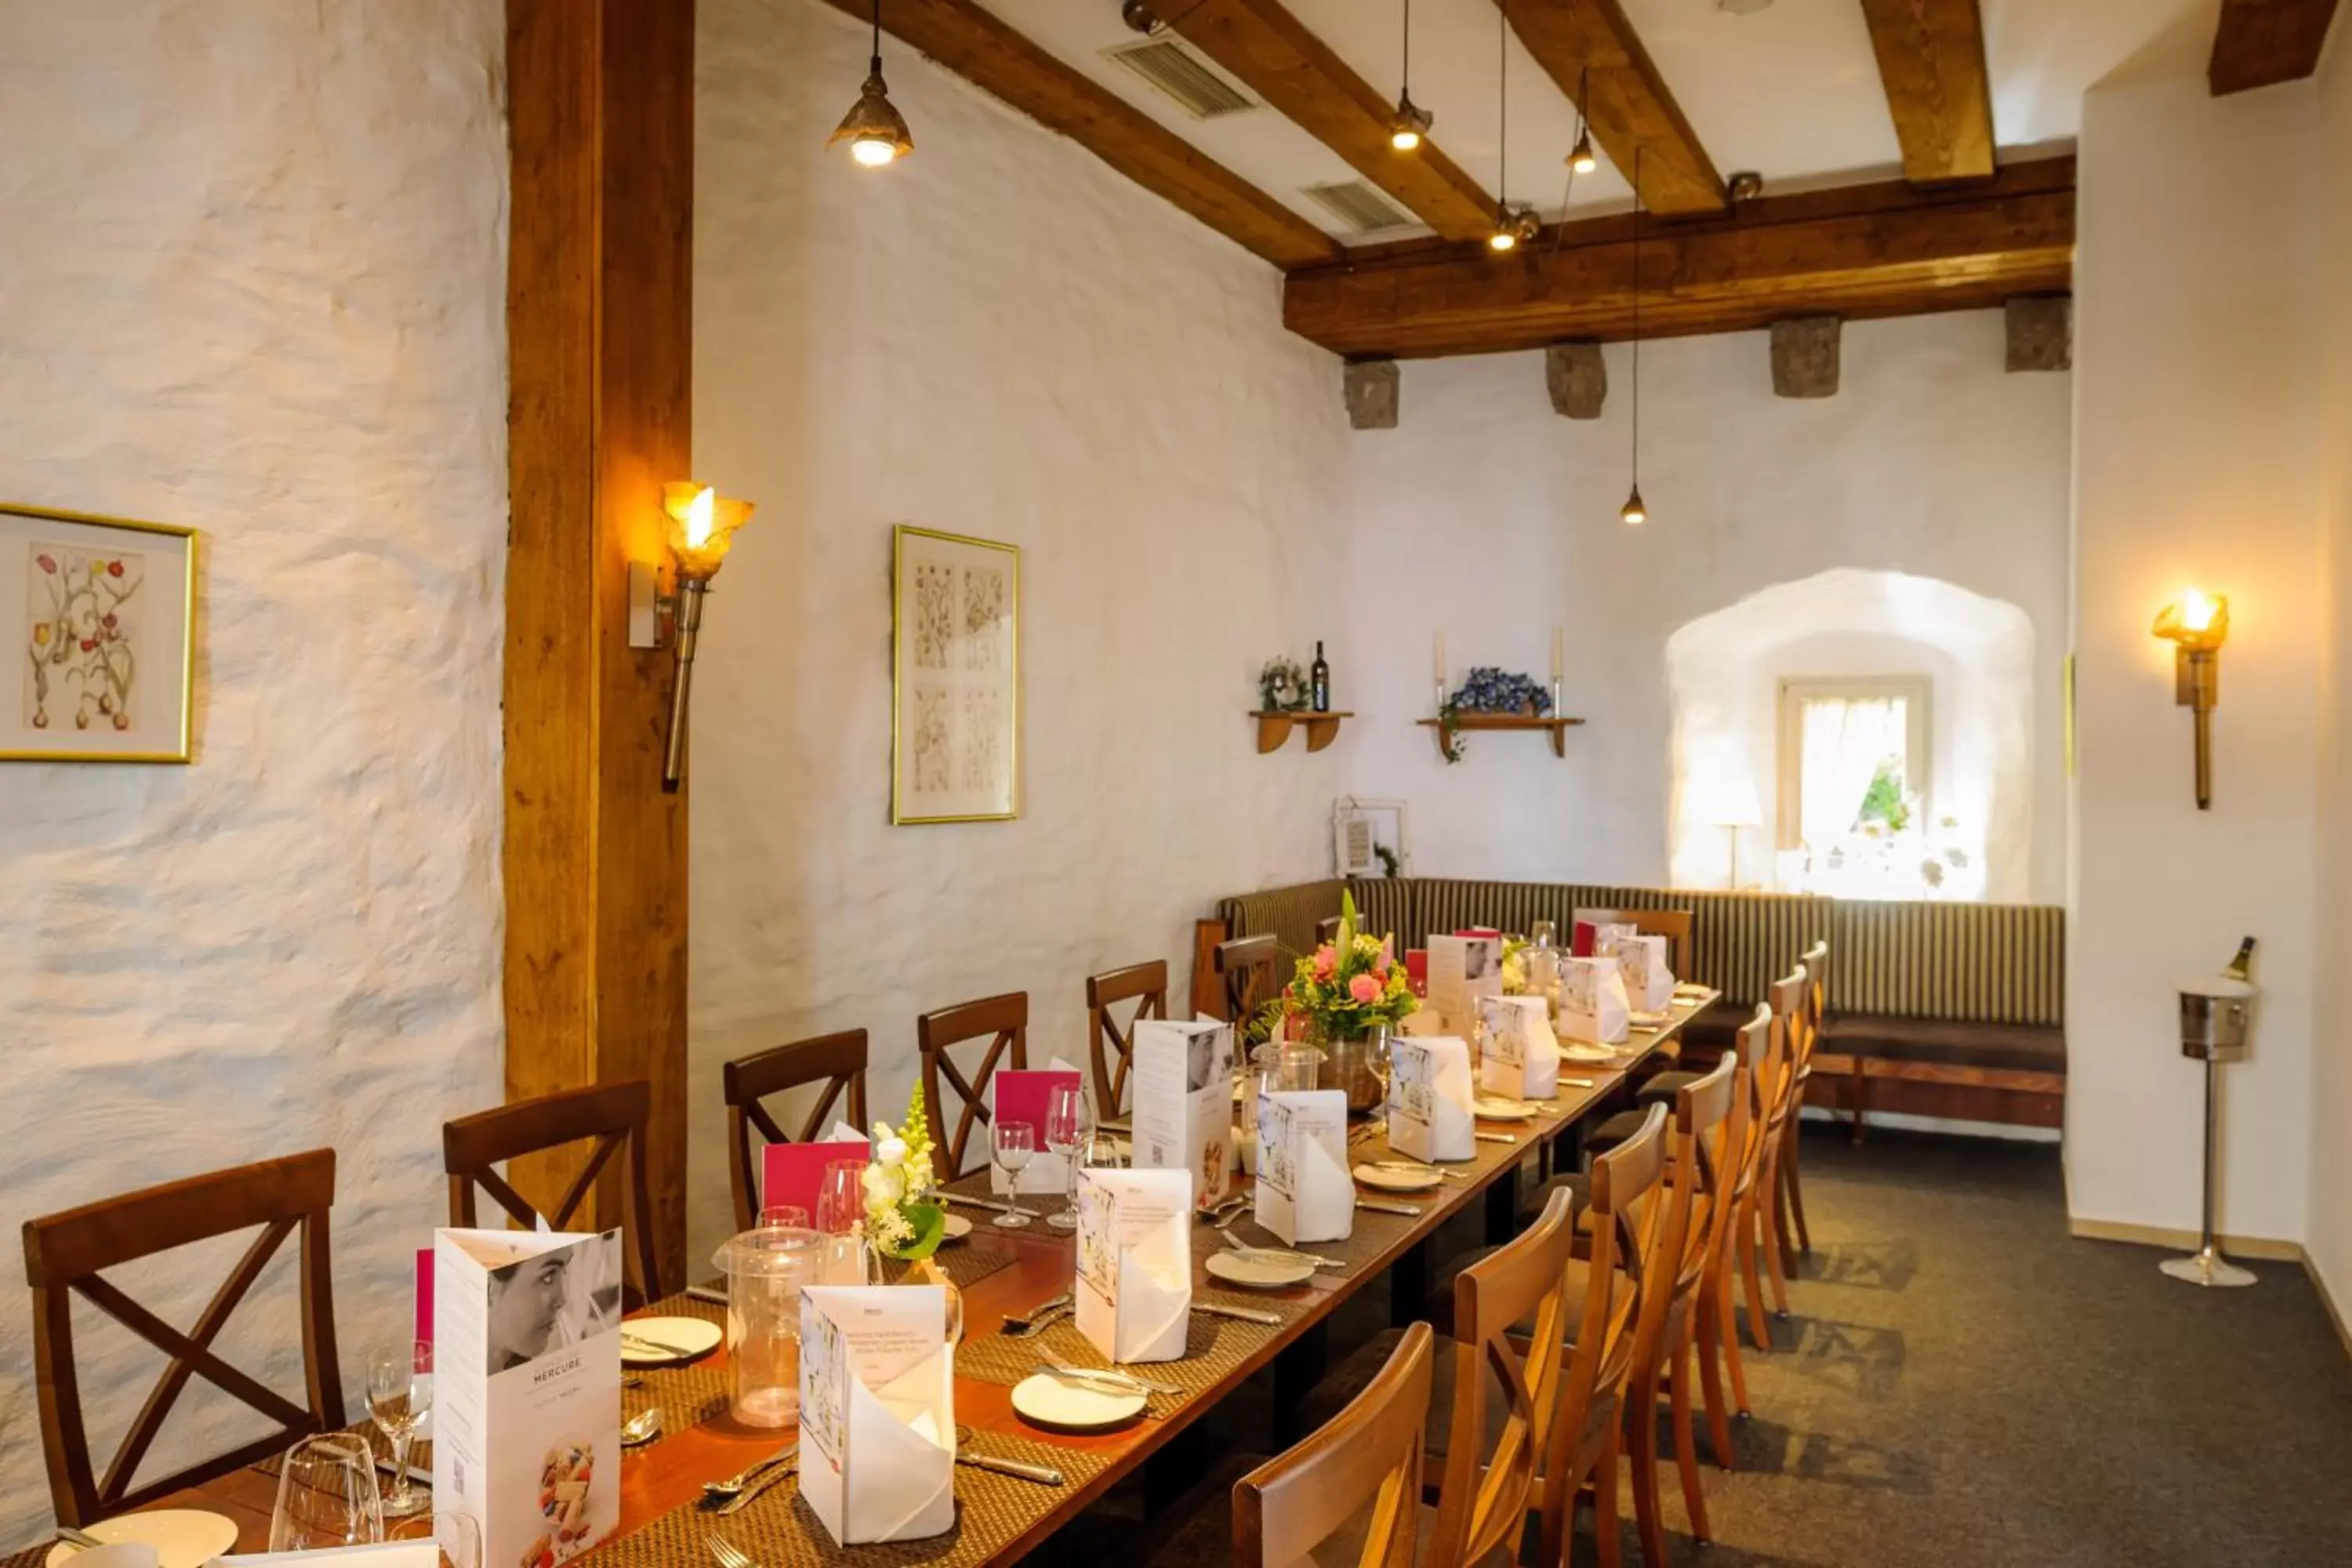 Banquet/Function facilities, Restaurant/Places to Eat in Mercure Hotel Erfurt Altstadt